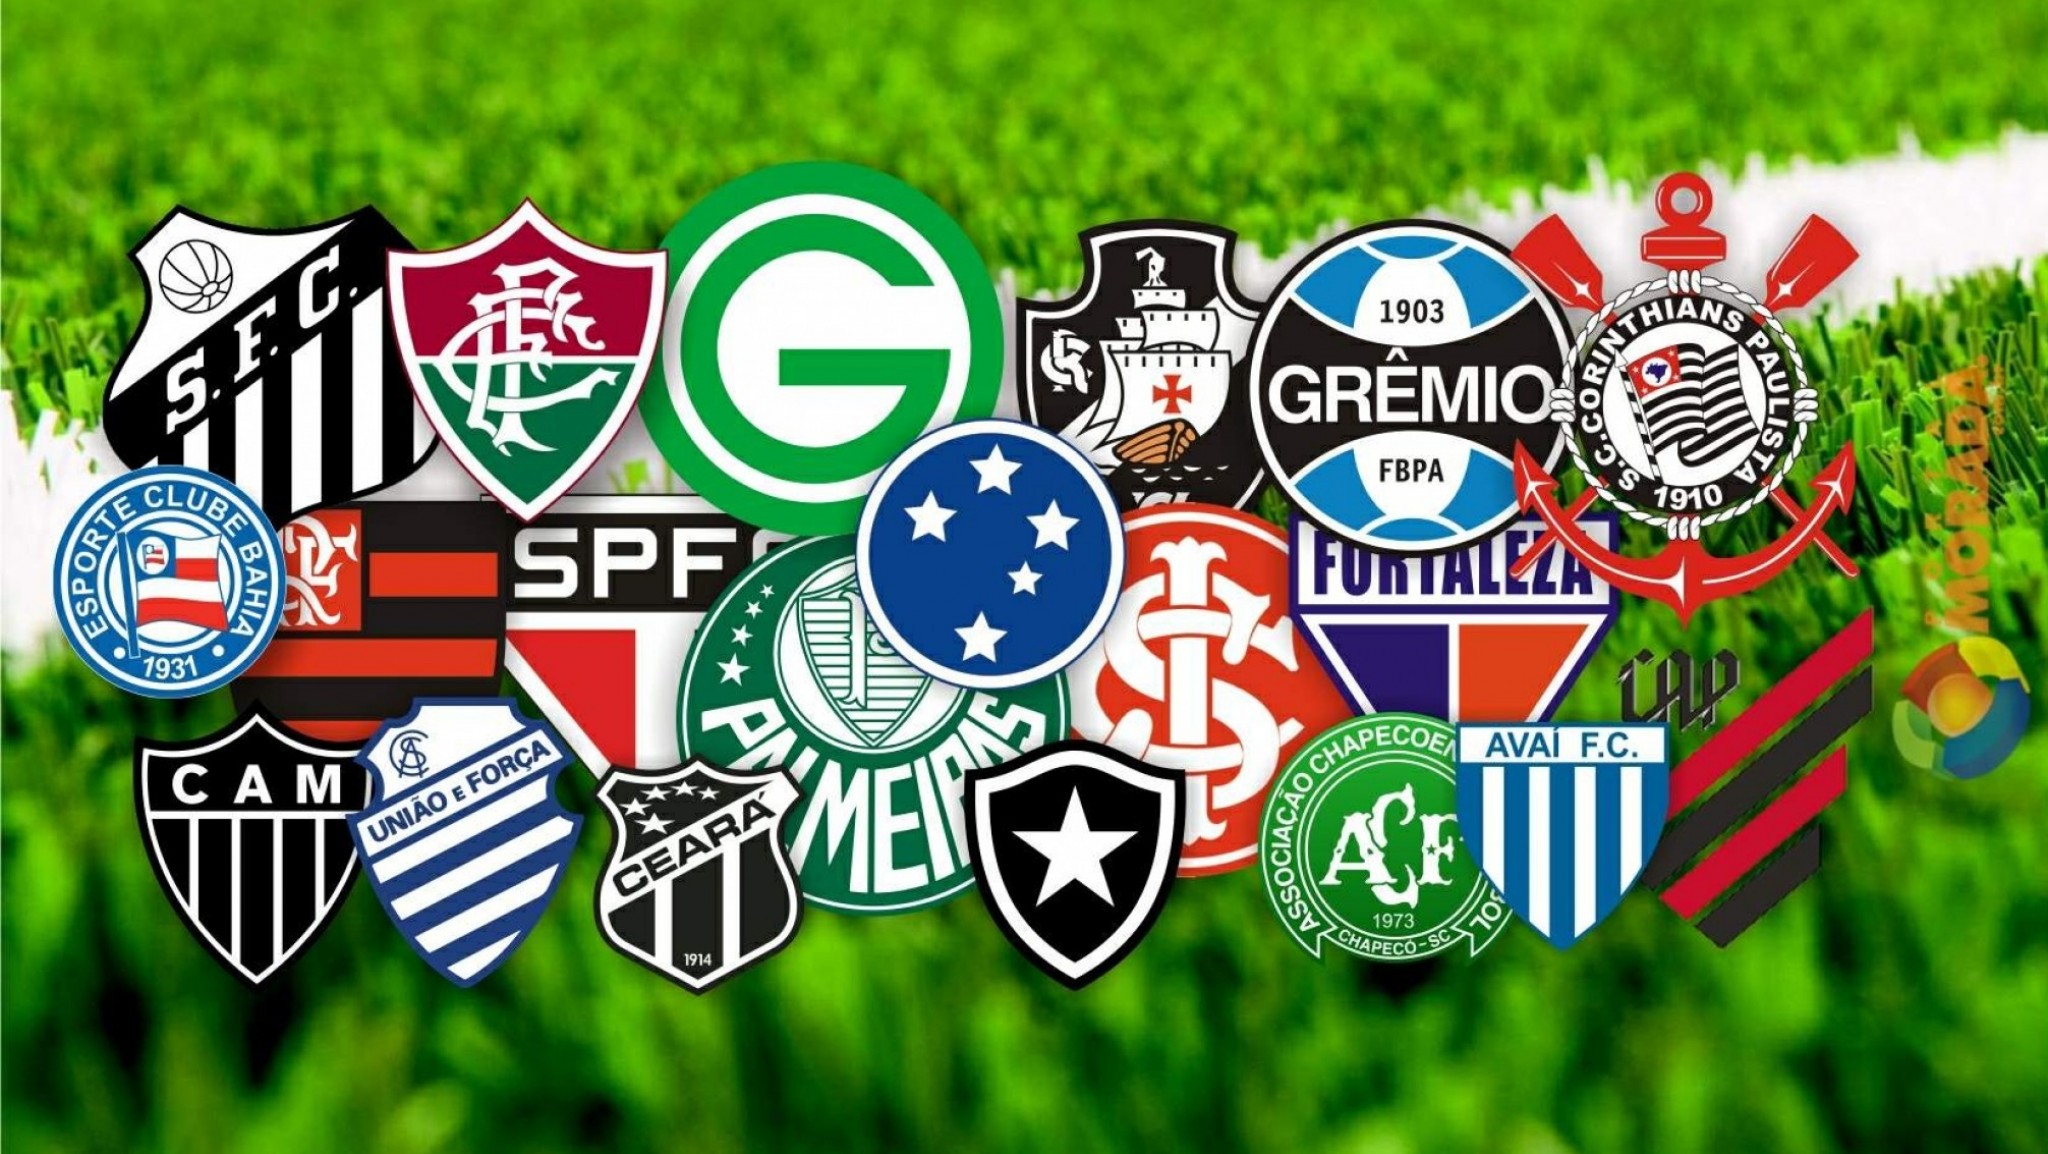 Jogos da 1ª rodada da Série C do Brasileirão - Esporte do Vale